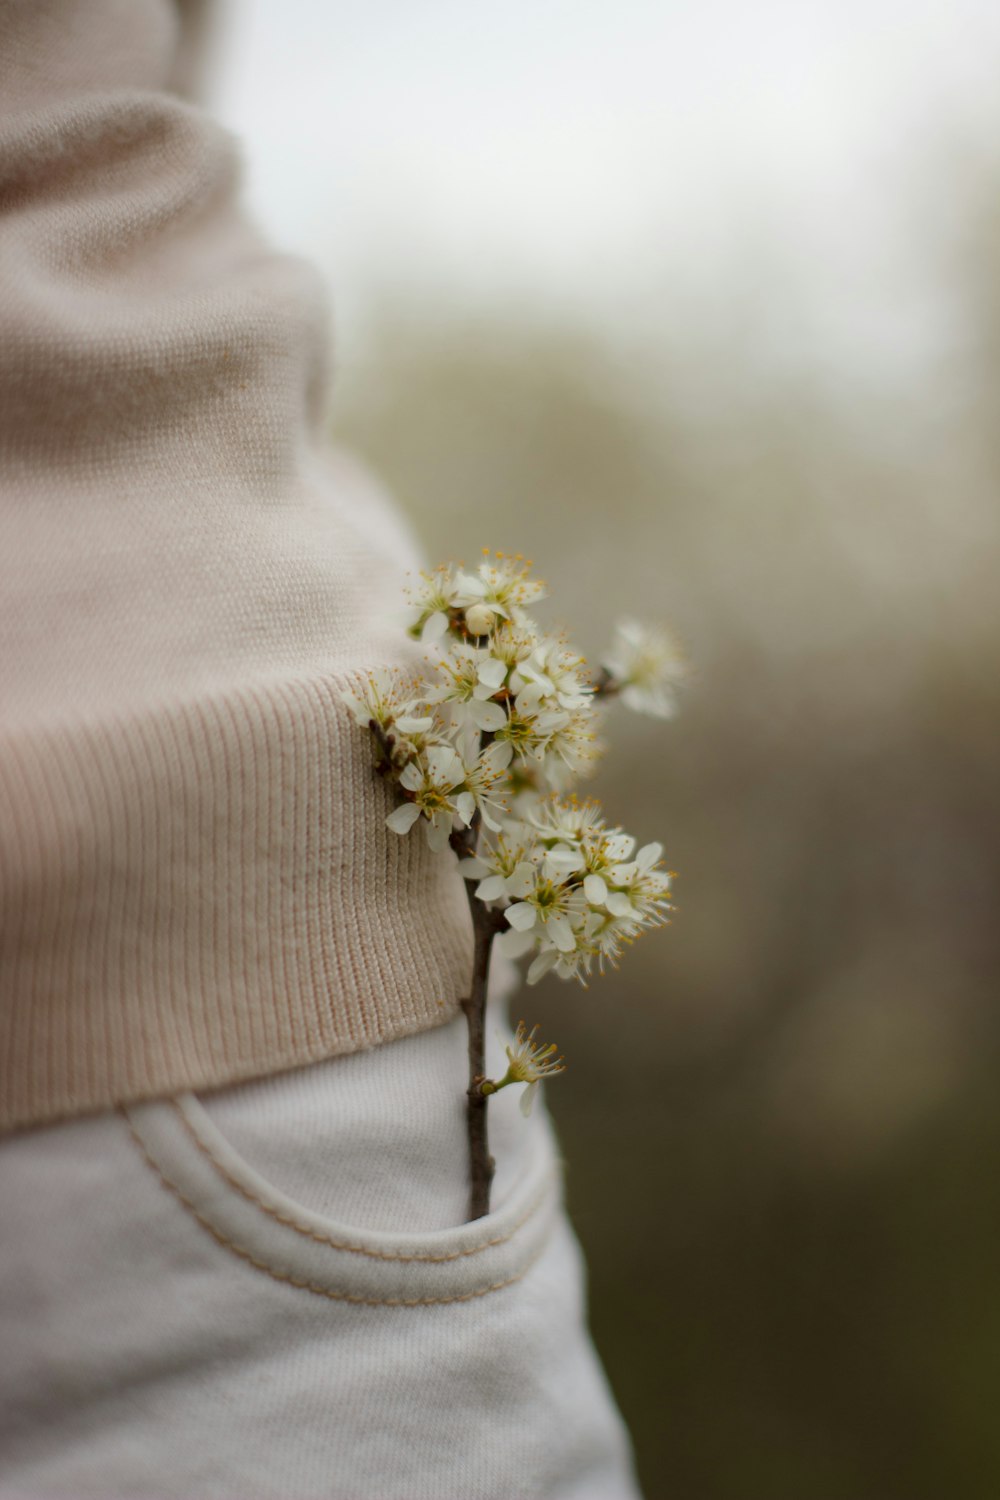 Una pequeña flor blanca que sobresale del bolsillo de los pantalones de alguien